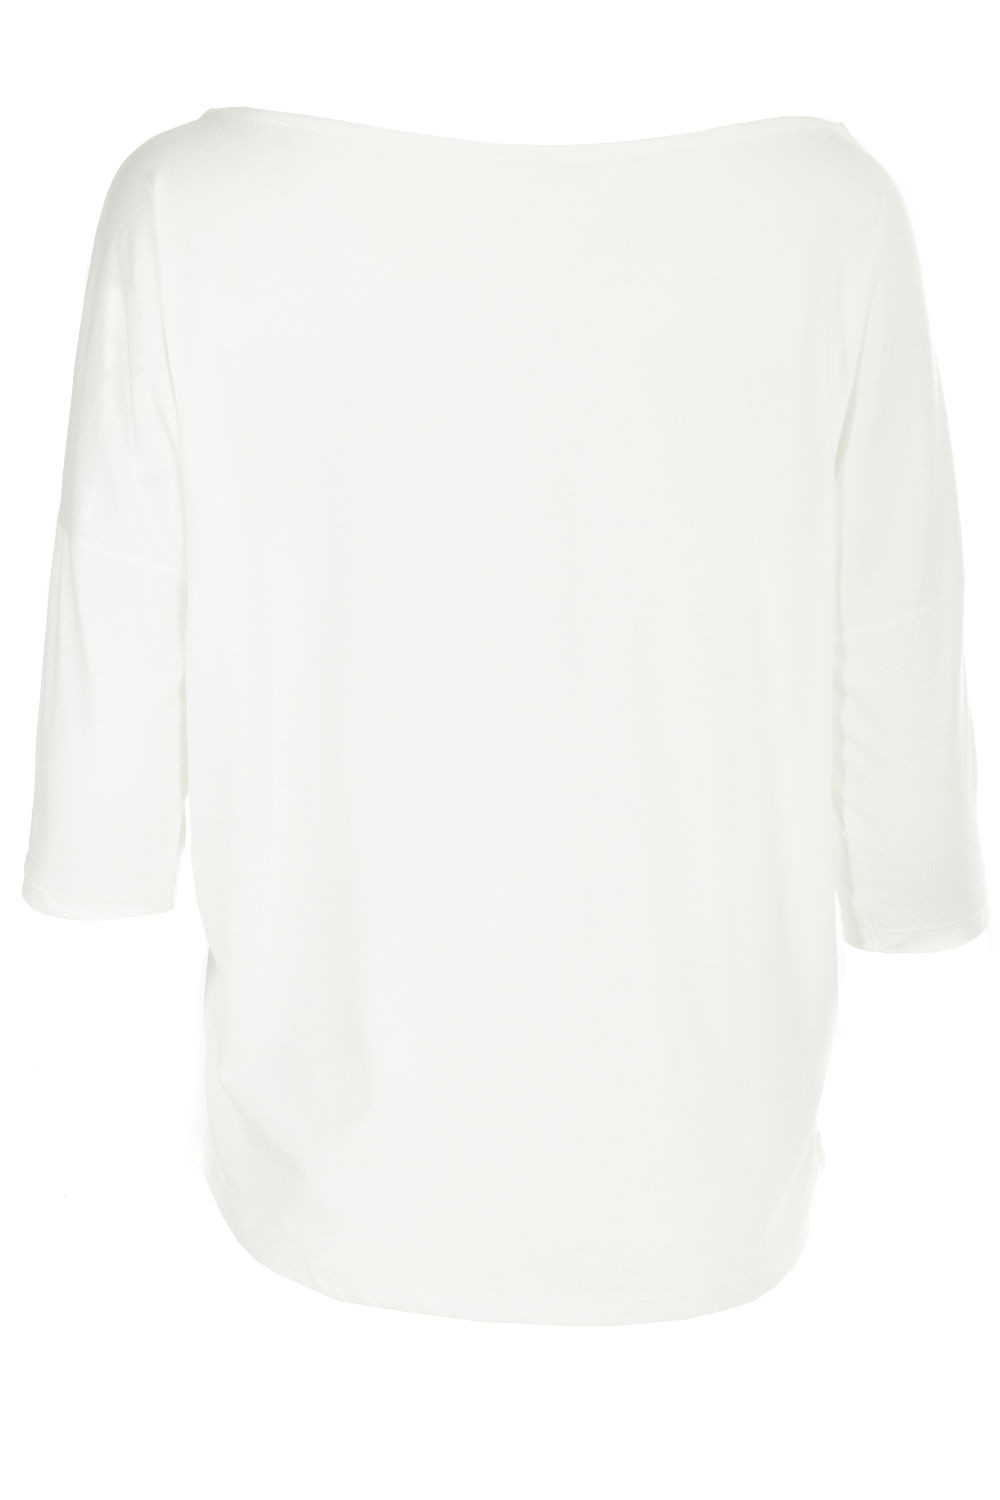 Ultra leichtes Modal-3/4-Arm Shirt MCS001, Winshape Dance Style vanilla weiß